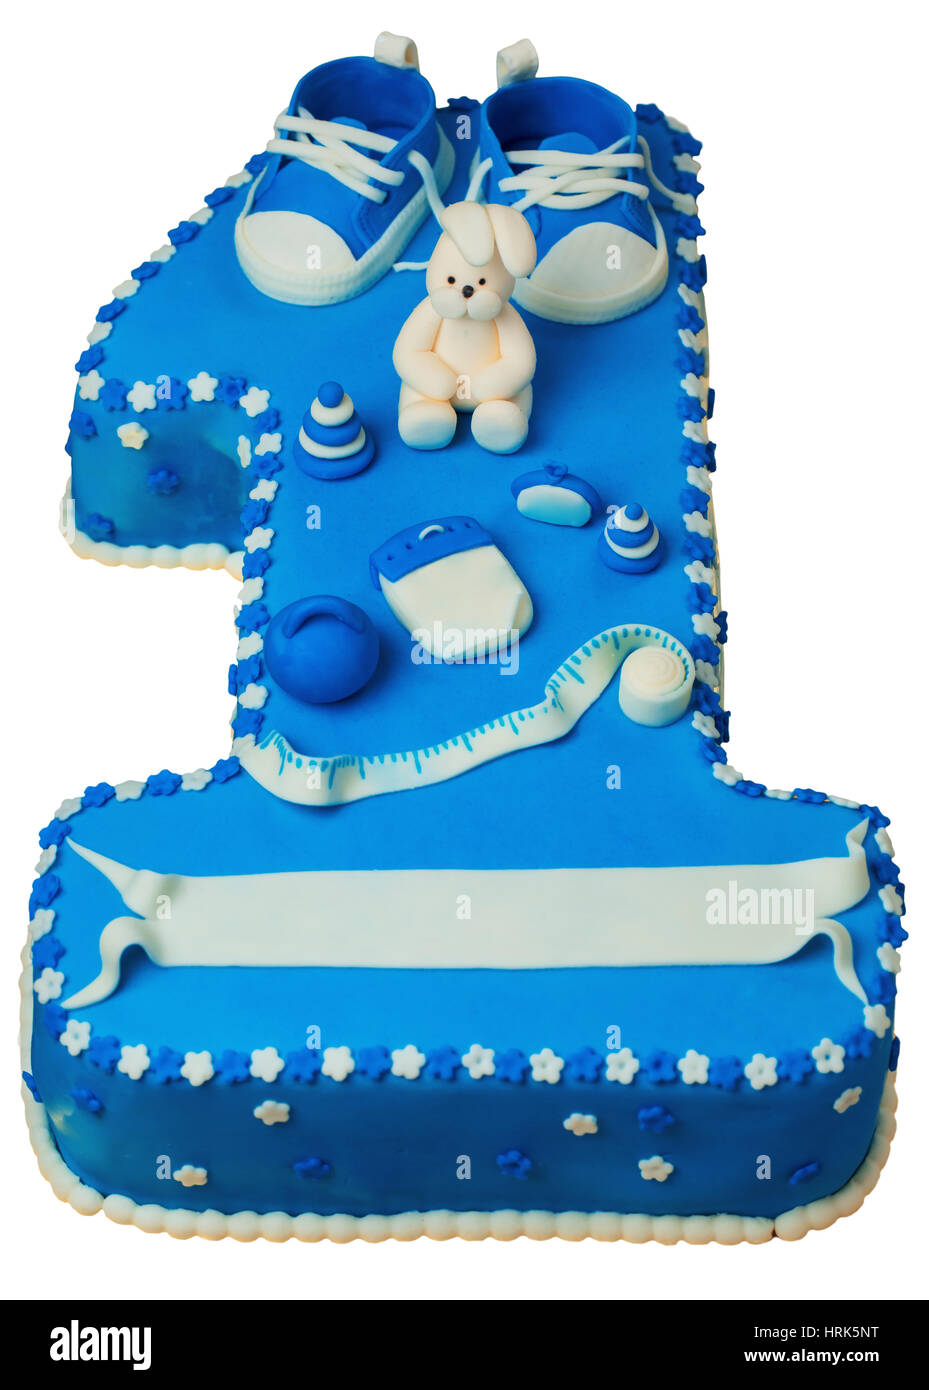 Torta de cumpleaños 1 año para Foto de stock 667468975